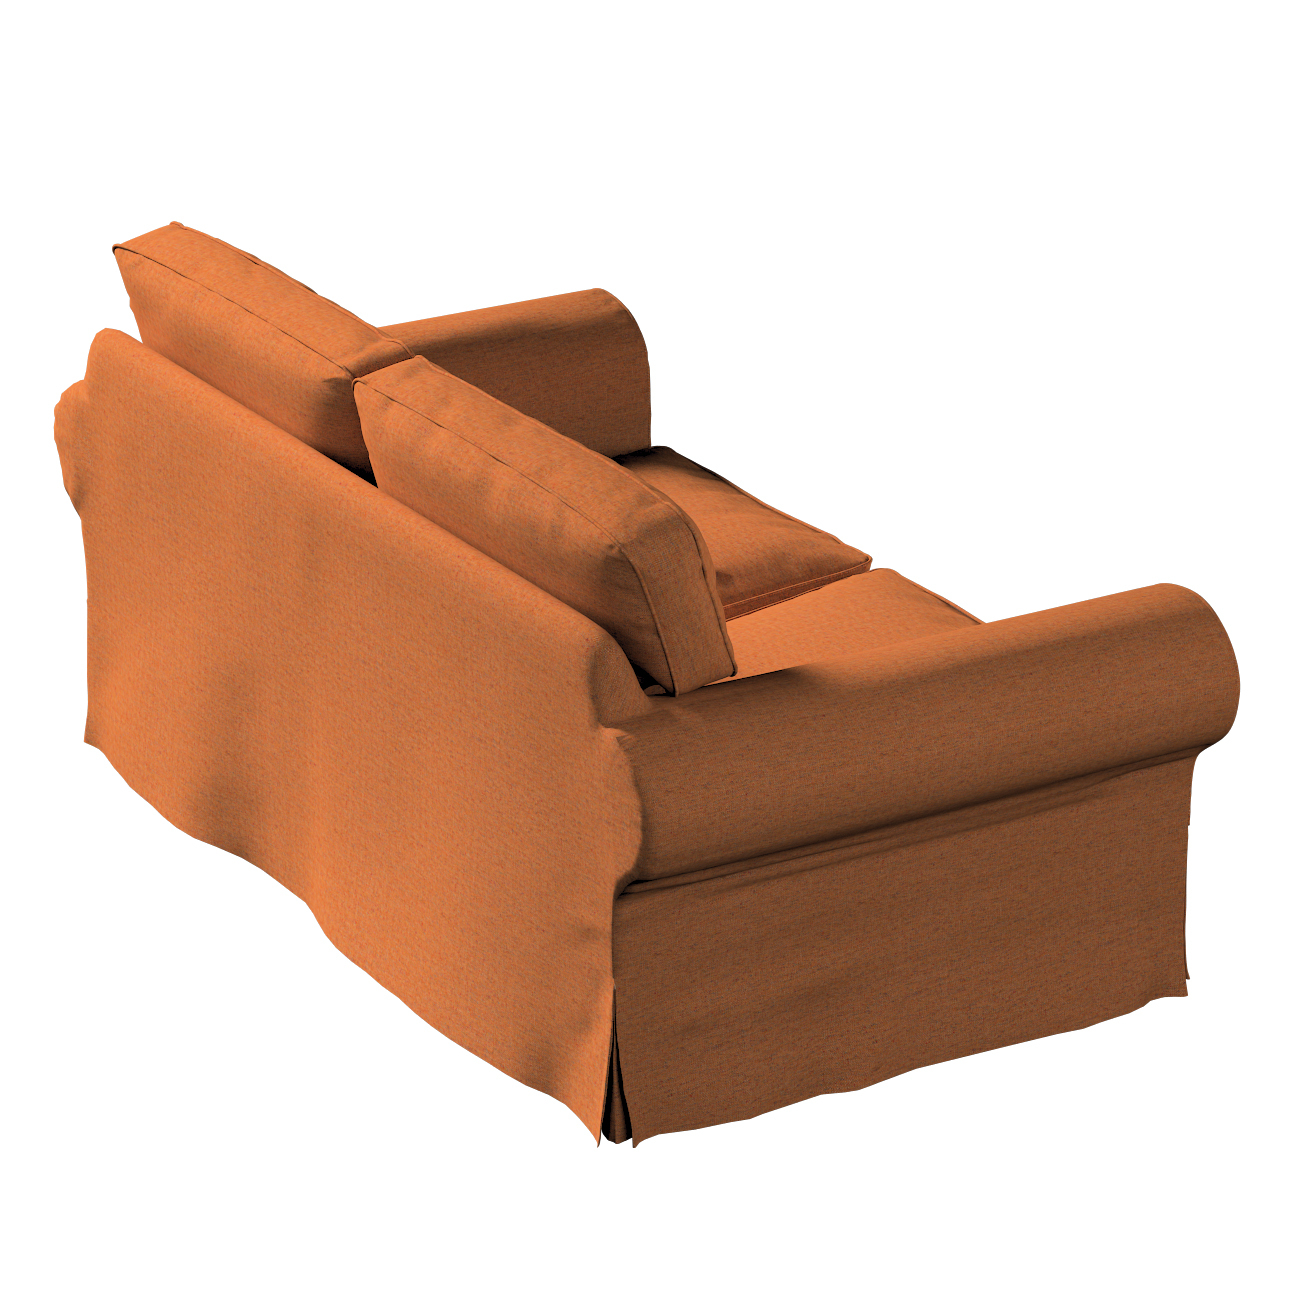 Bezug für Ektorp 2-Sitzer Sofa nicht ausklappbar, orange, Sofabezug für  Ek günstig online kaufen